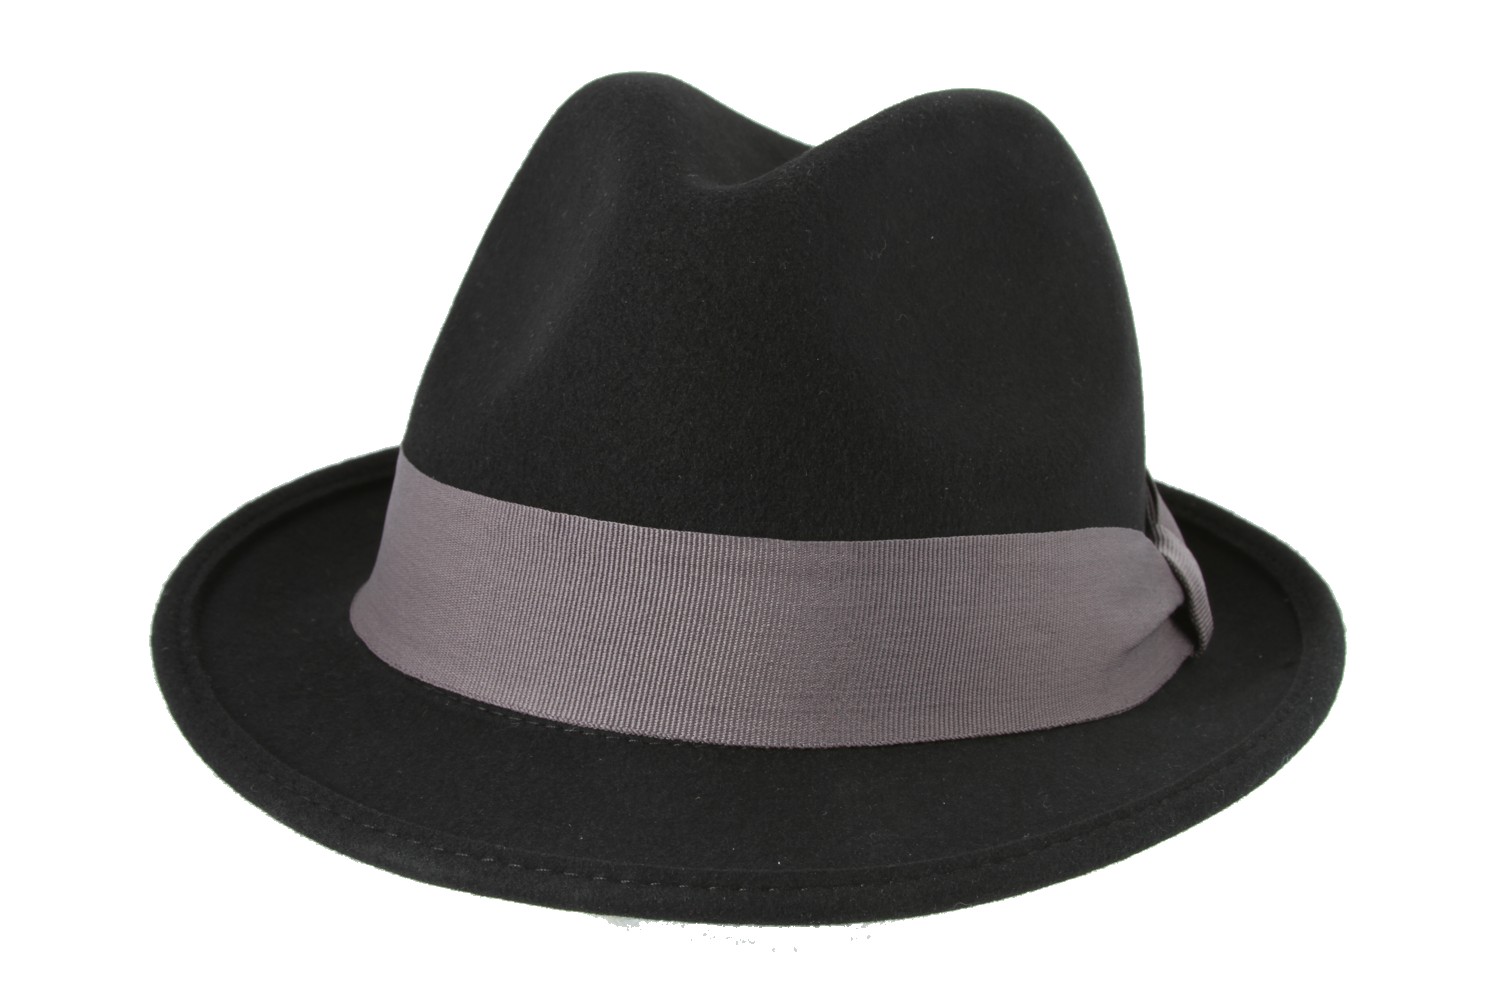 Augen hat. Трилби черная Джексон. Шляпа трилби. Женская шляпа для фотошопа. Шляпа NFT.